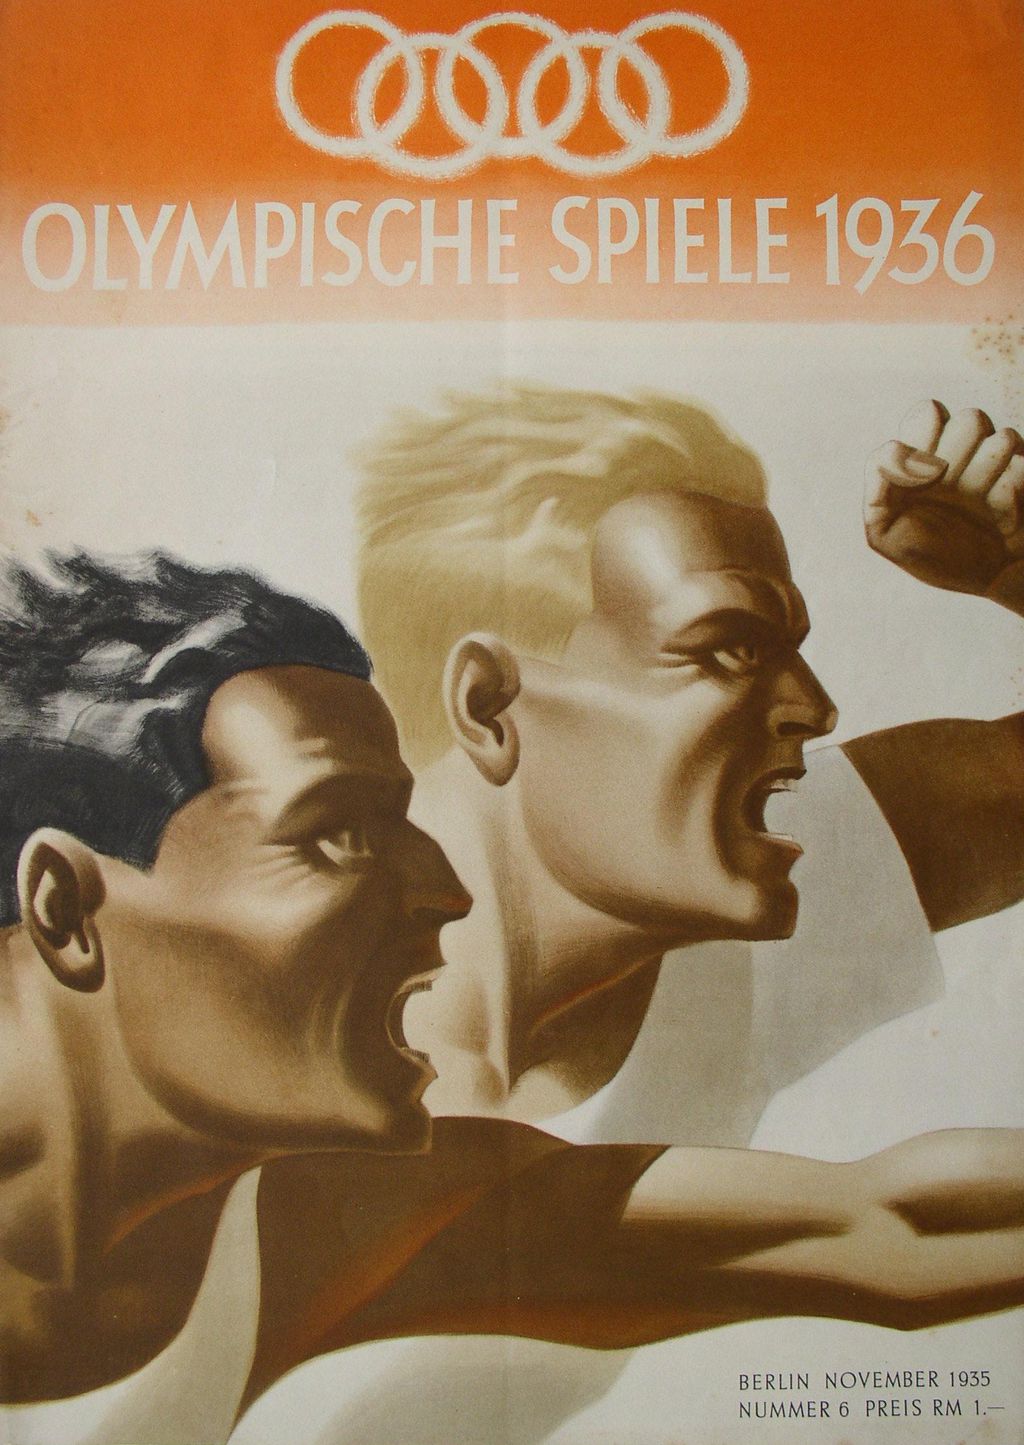 Druckgut: "Monatsheft des Propagandaausschusses für die Olympischen Spiele", 1936